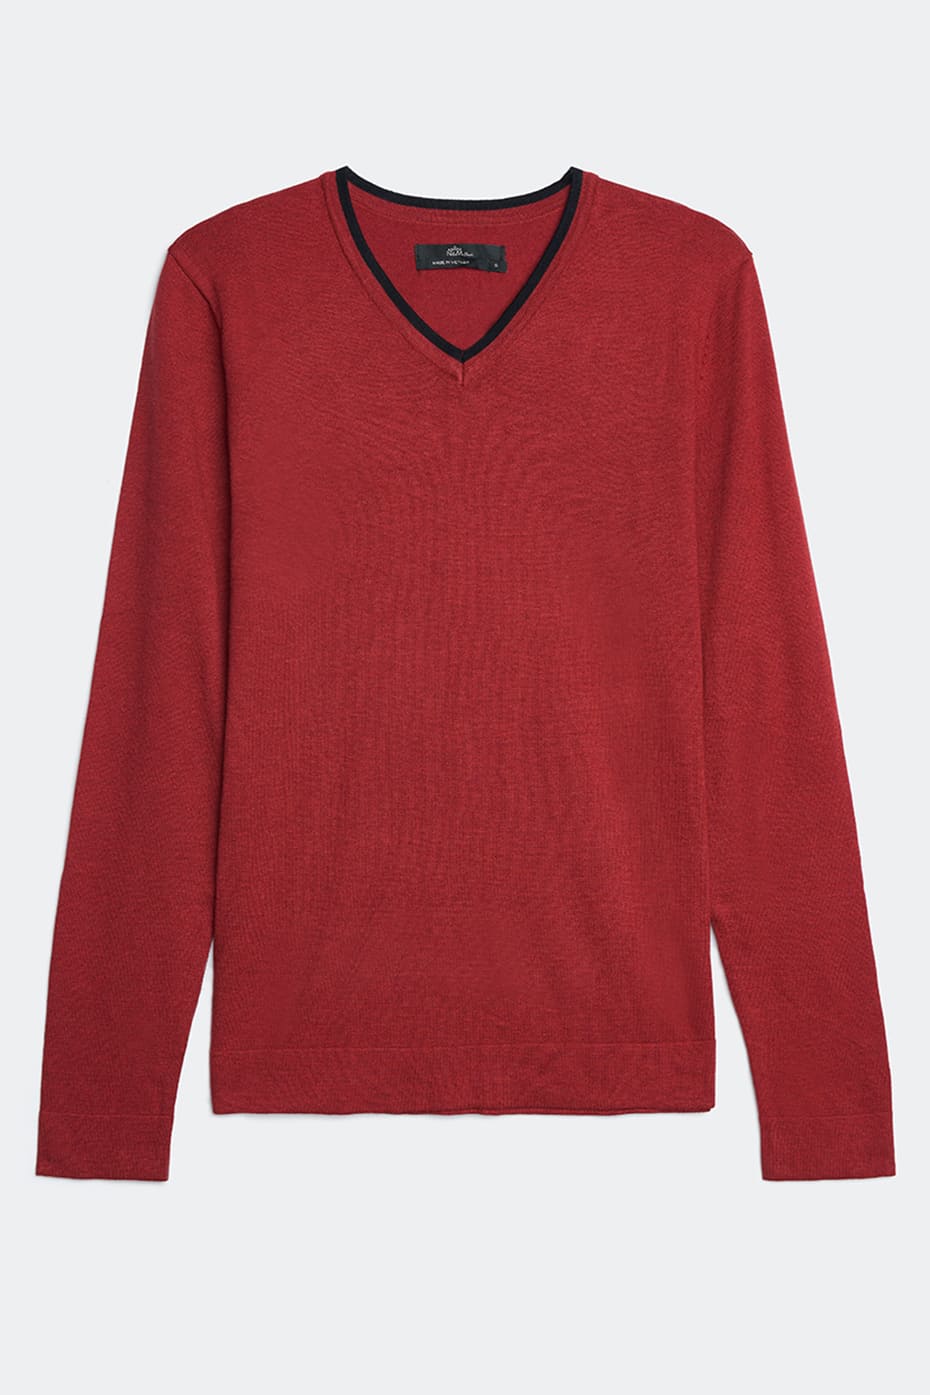 Áo sweater Basic Nam tay dài N&M 1804010